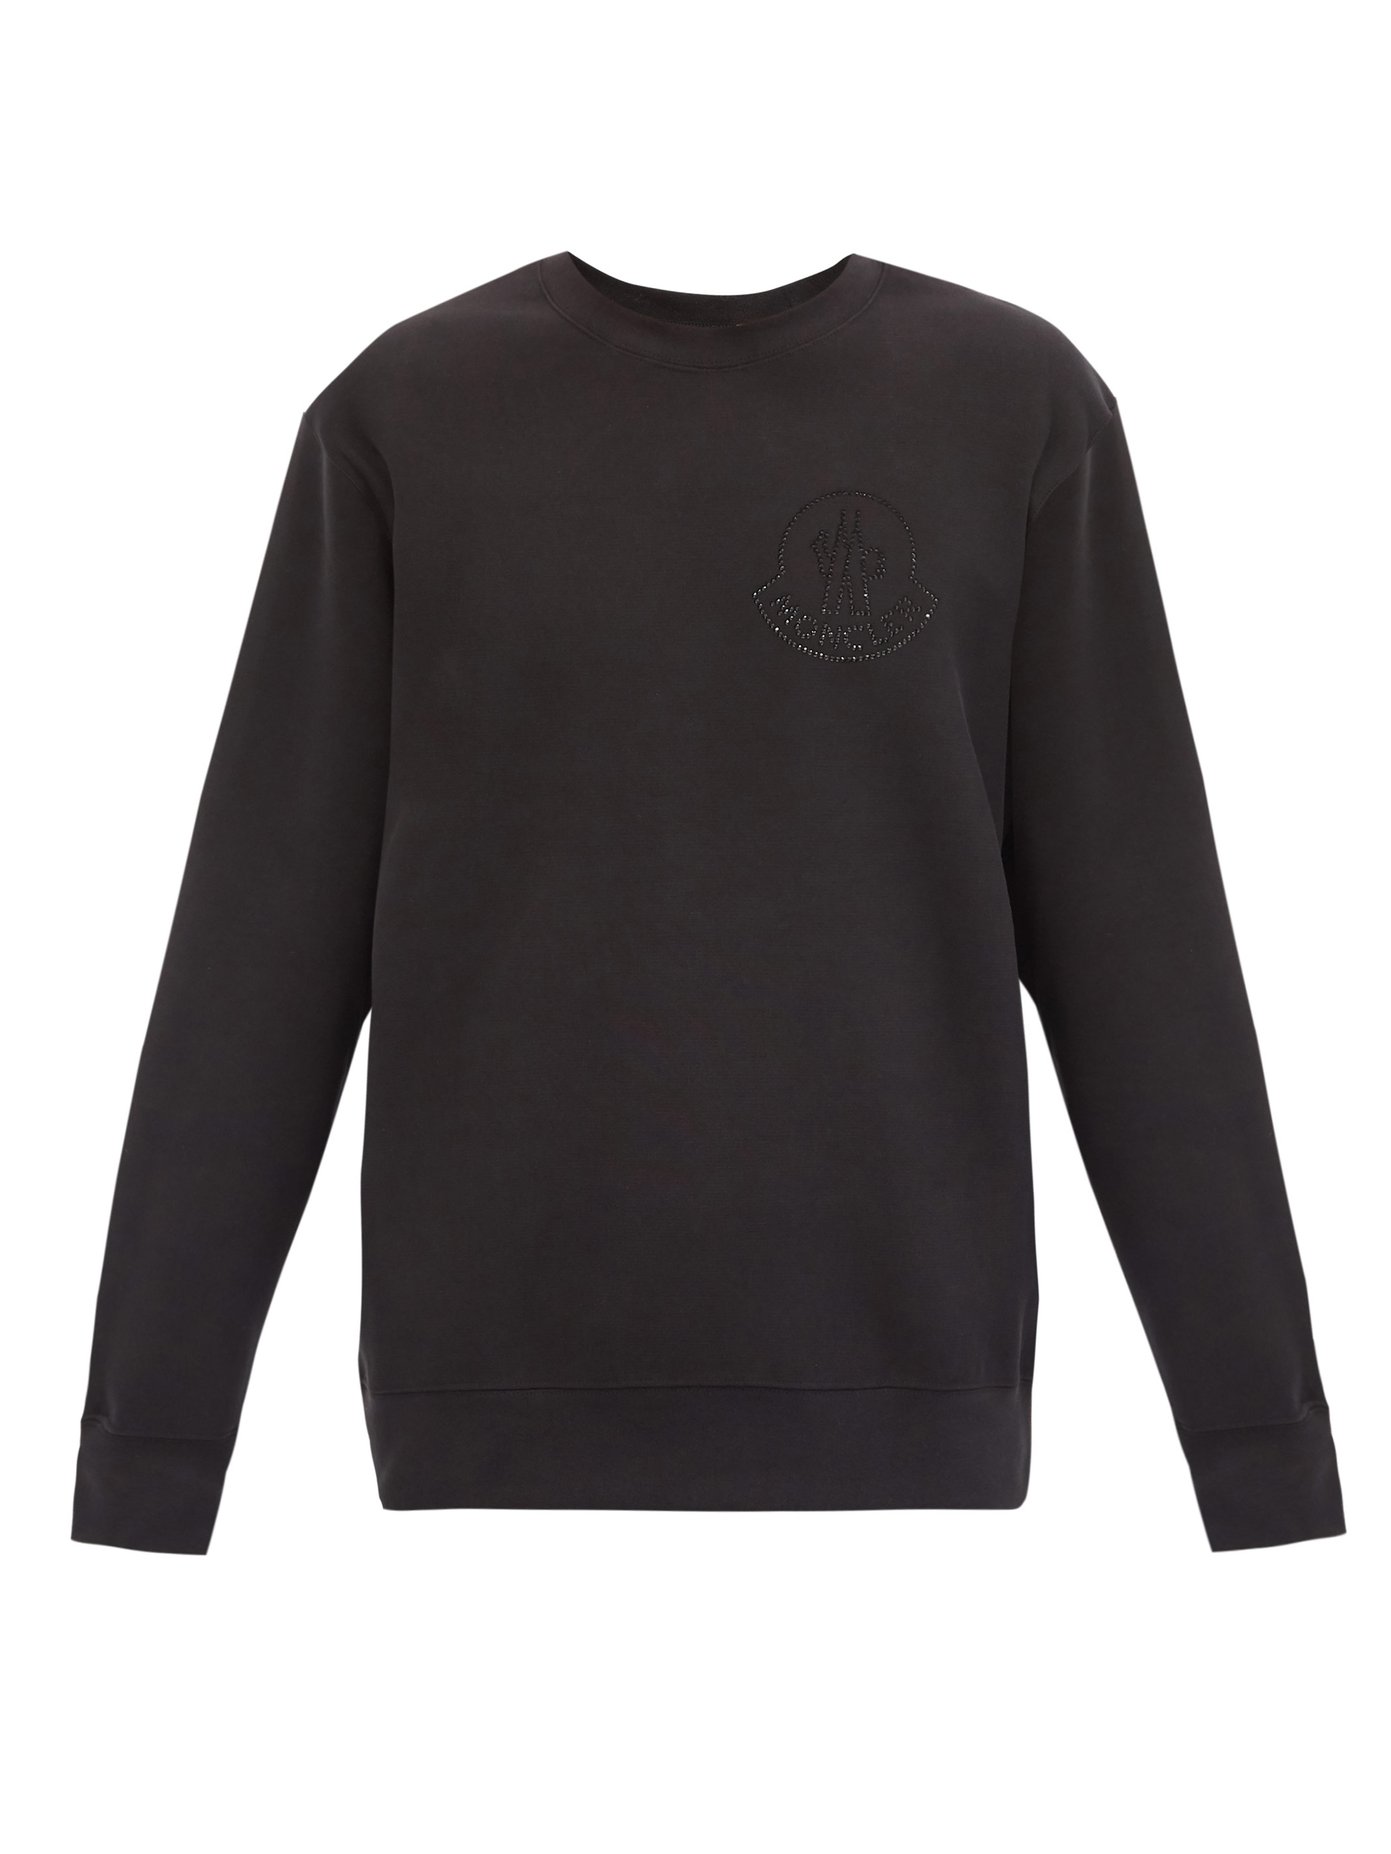 moncler black sweatshirt